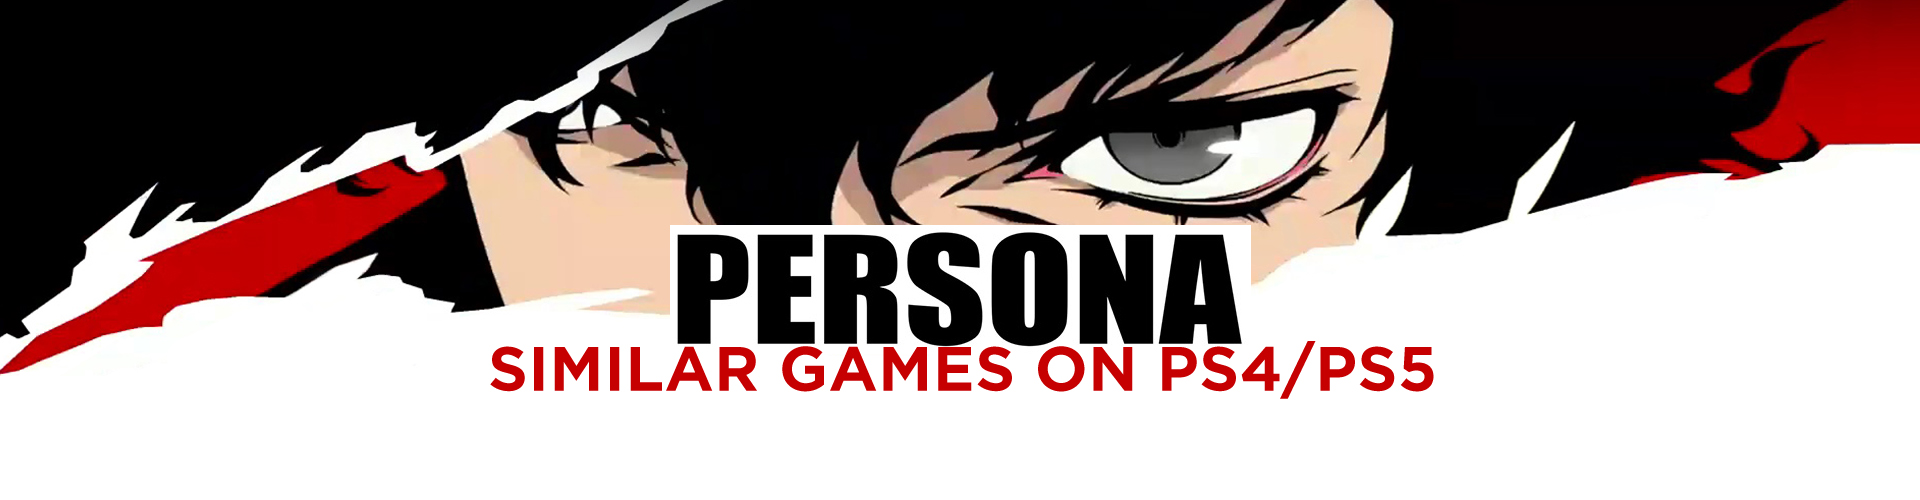 Le Top 10 des Jeux comme Persona sur PS4/PS5